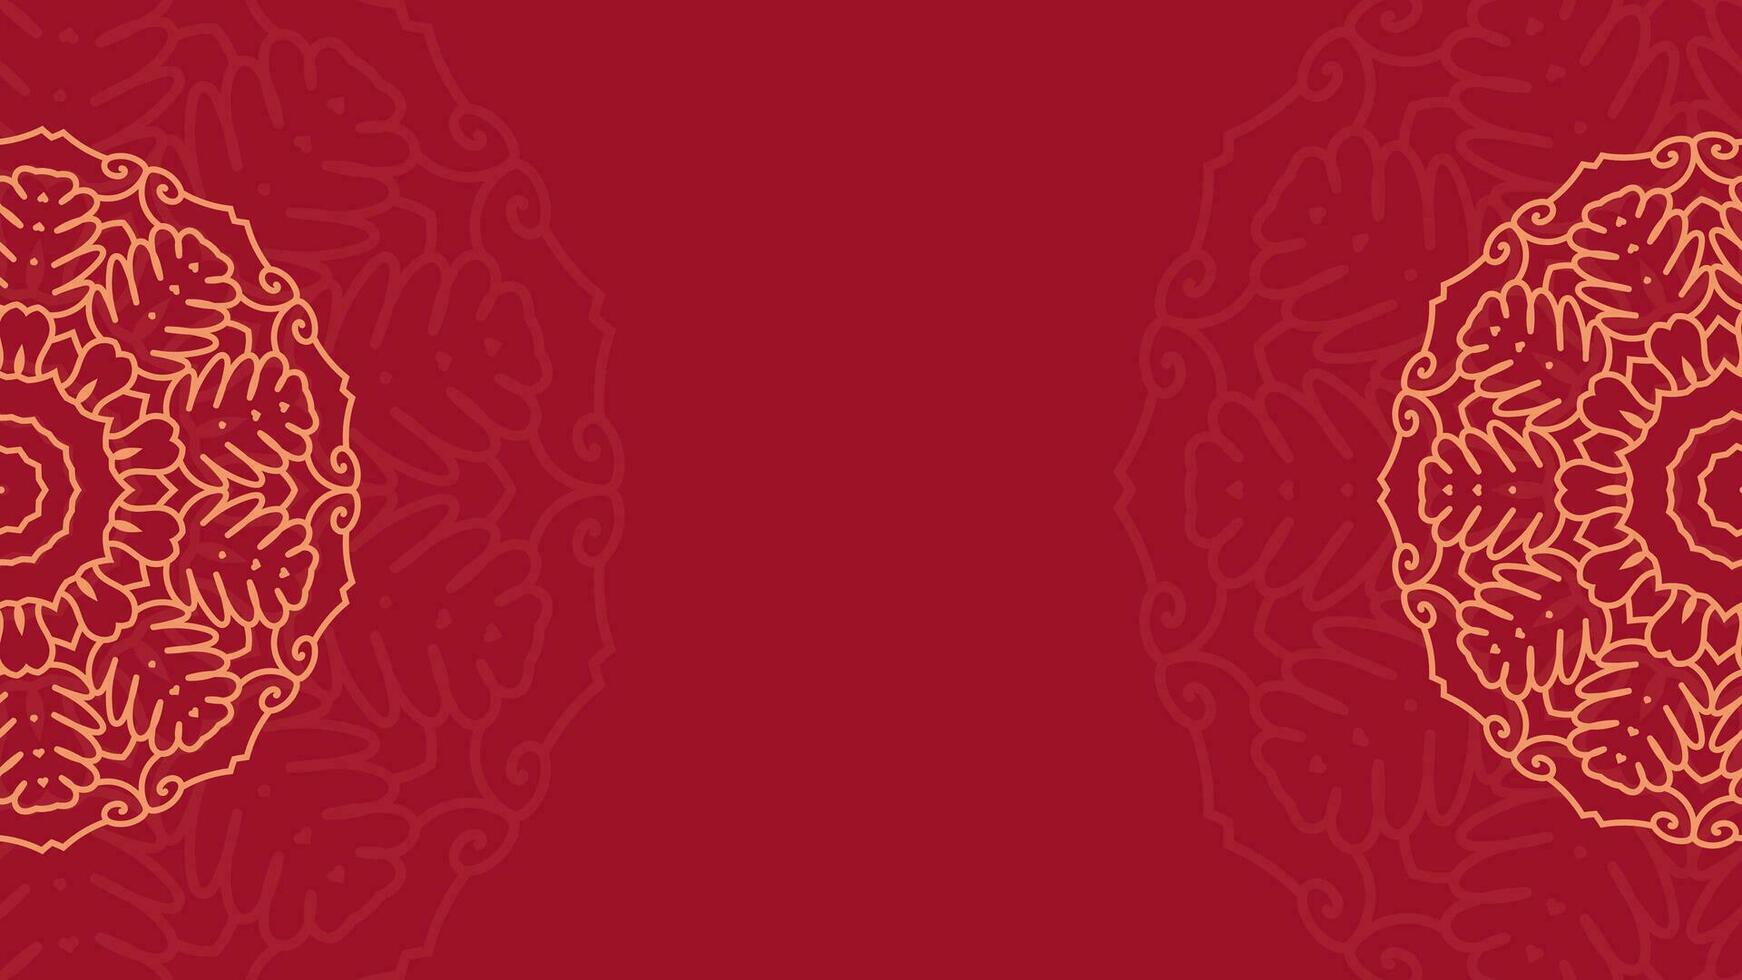 kleurrijk sier- mandala achtergrond behang met een plaats voor tekst. mandala voor afdrukken, poster, omslag, brochure, folder, spandoek. abstract stijl vector illustratie eps 10.